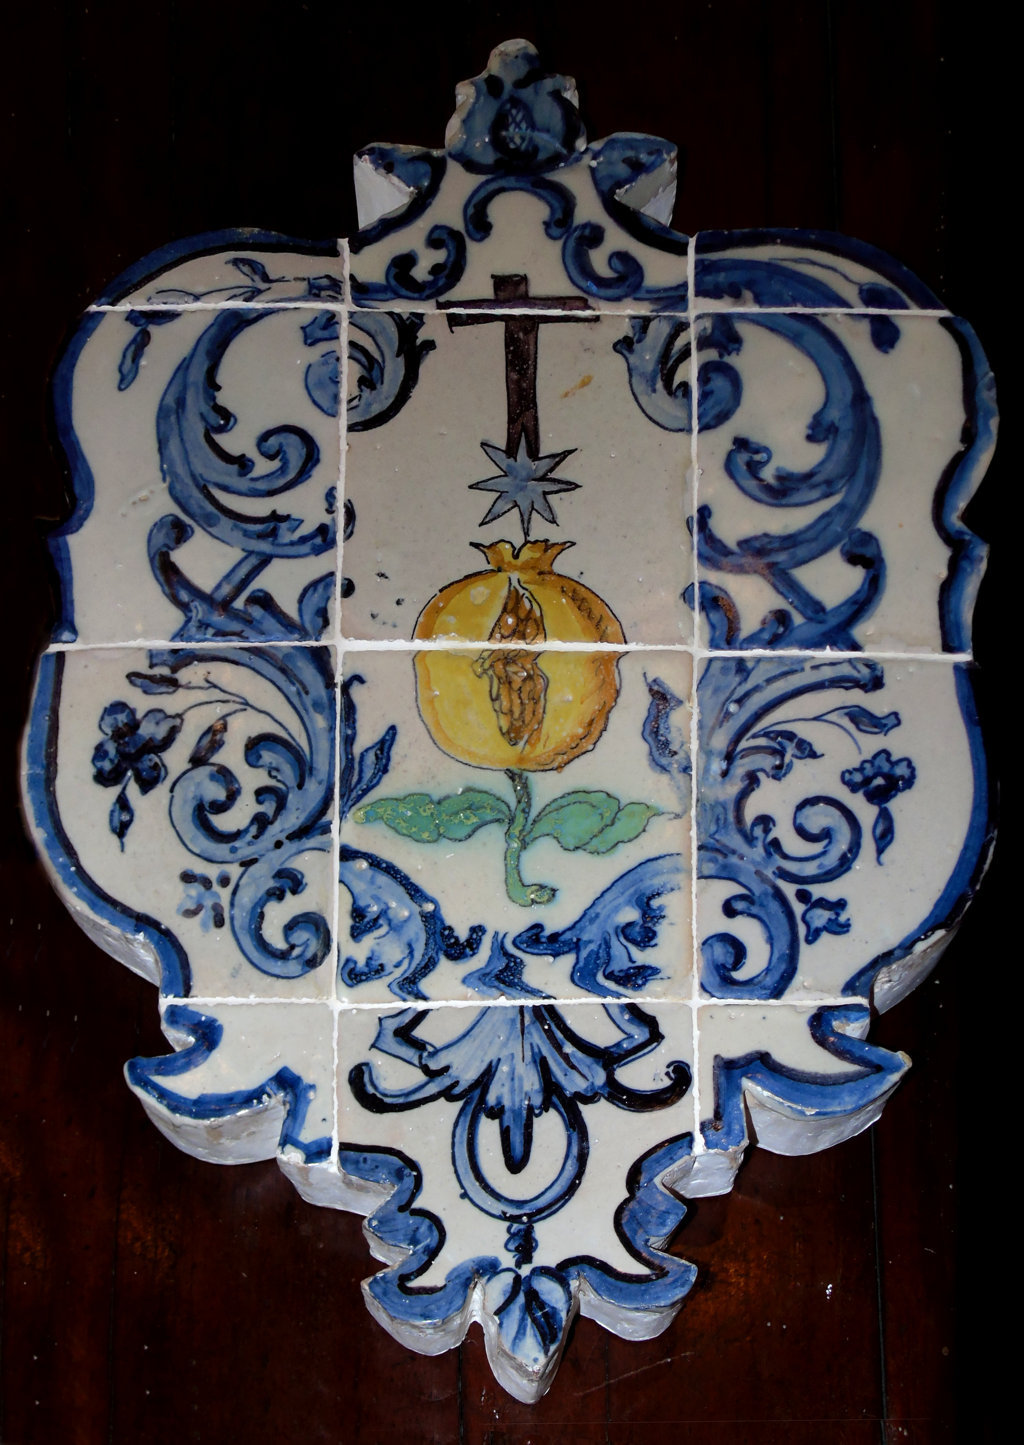 02574. Cartela con el escudo de la Hermandad de la Santa Caridad. Iglesia de San Juan de Dios. Cádiz.